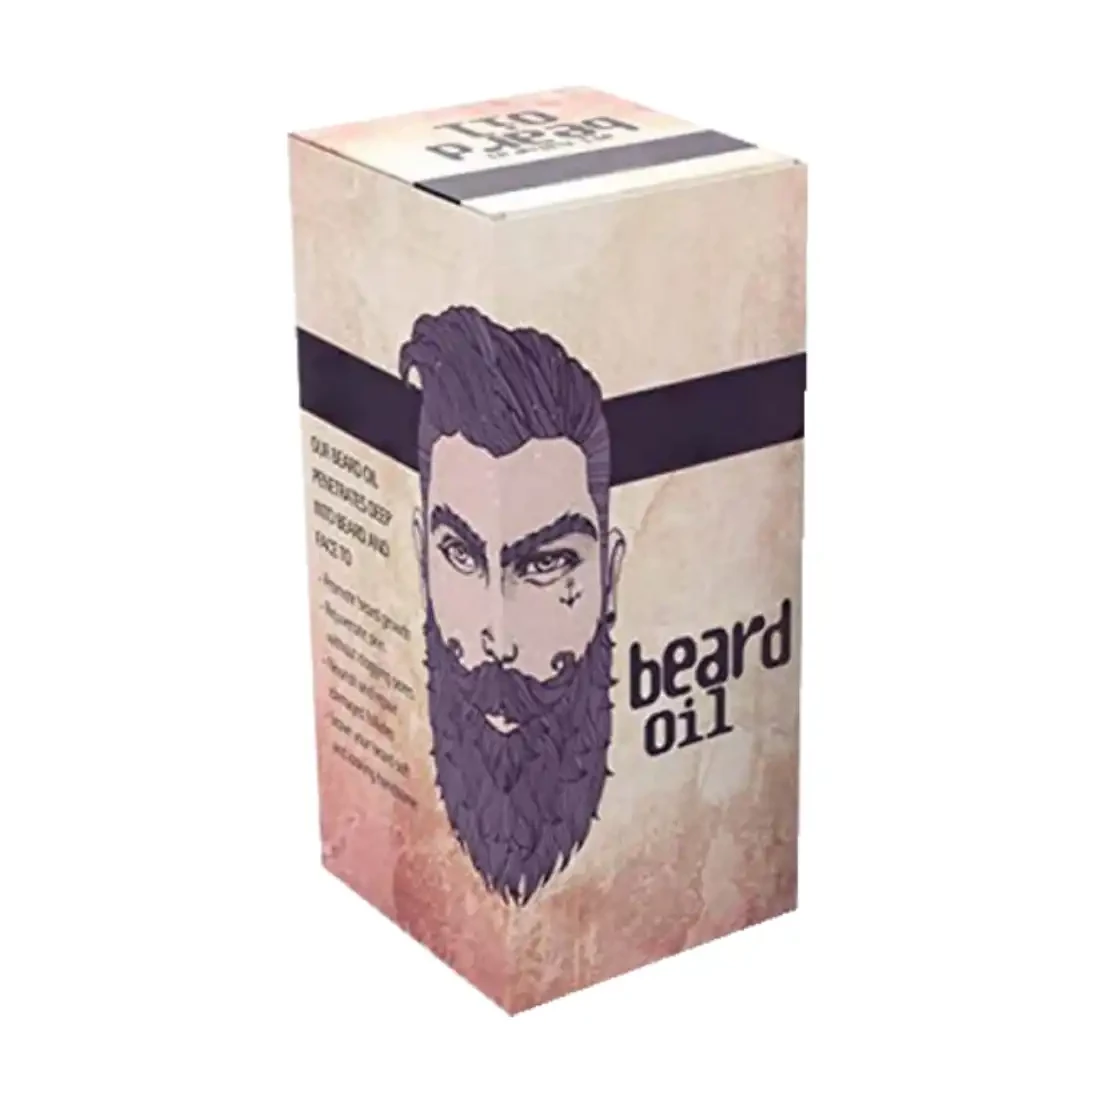 custom-hemp-beard-oil-boxes